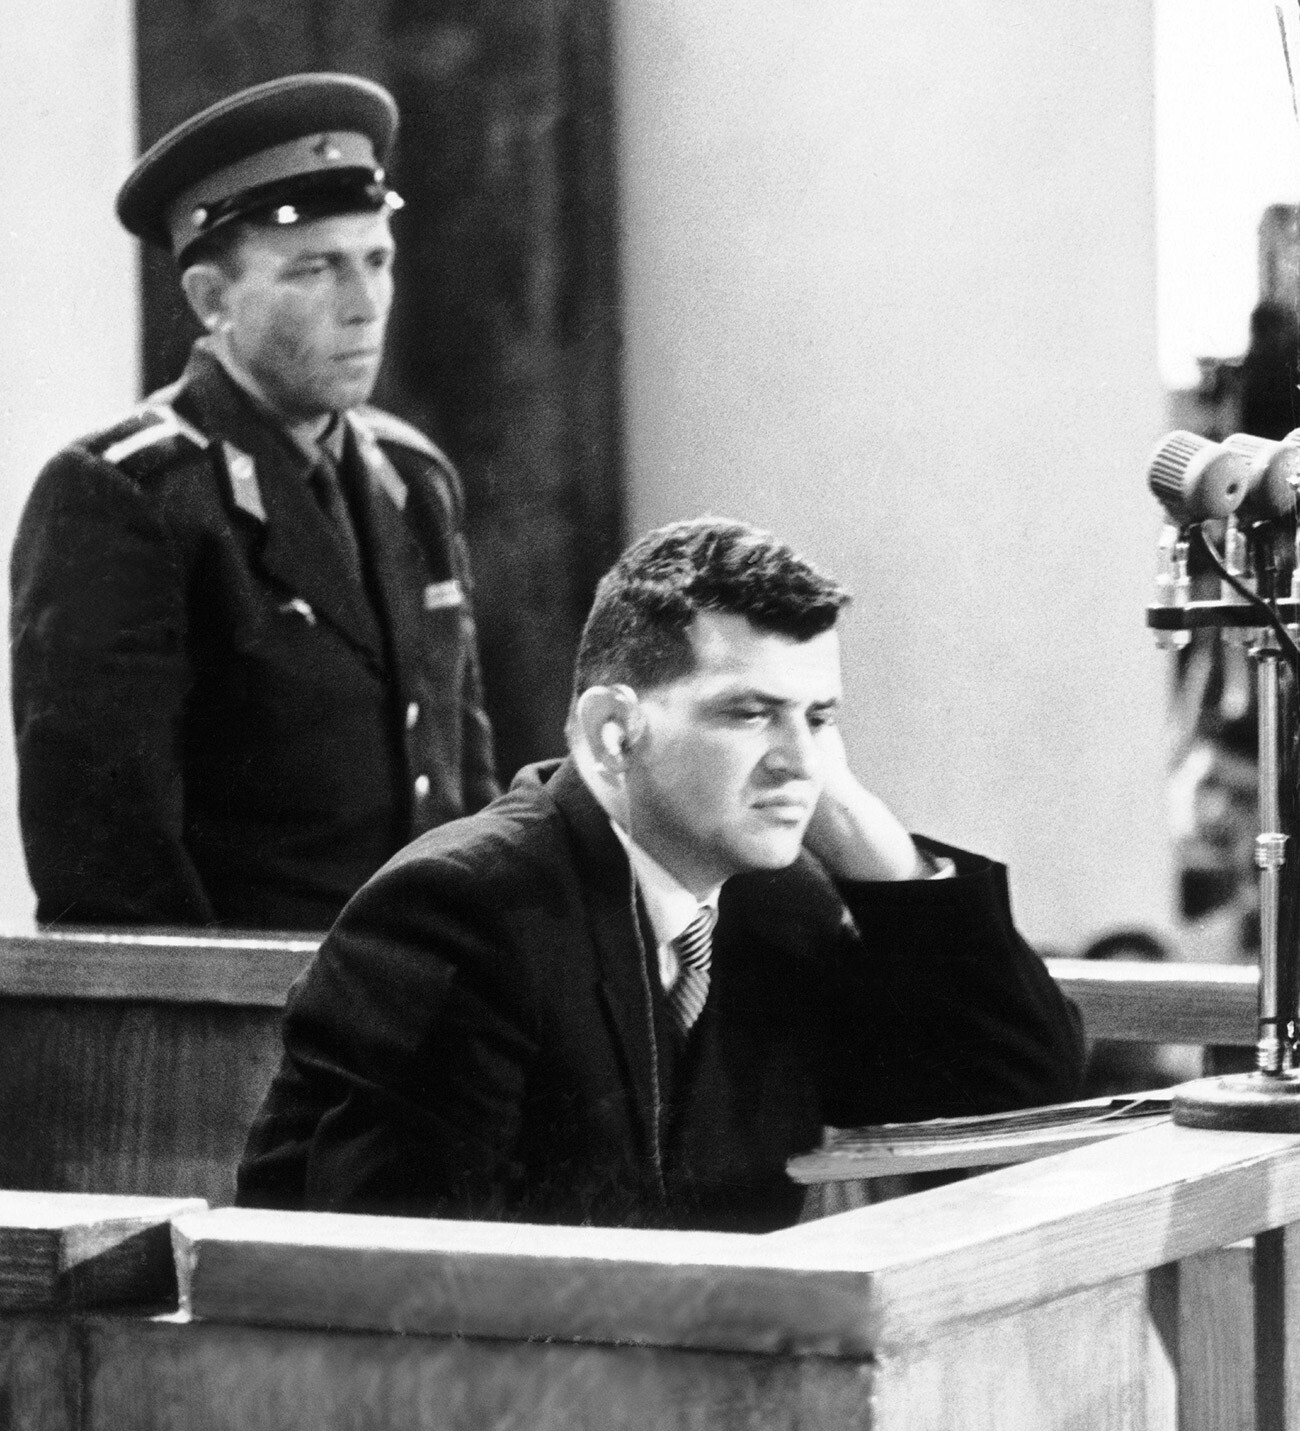 Der Pilot Francis Gary Powers wurde 1960 von einem sowjetischen Gericht wegen Spionage verurteilt.
